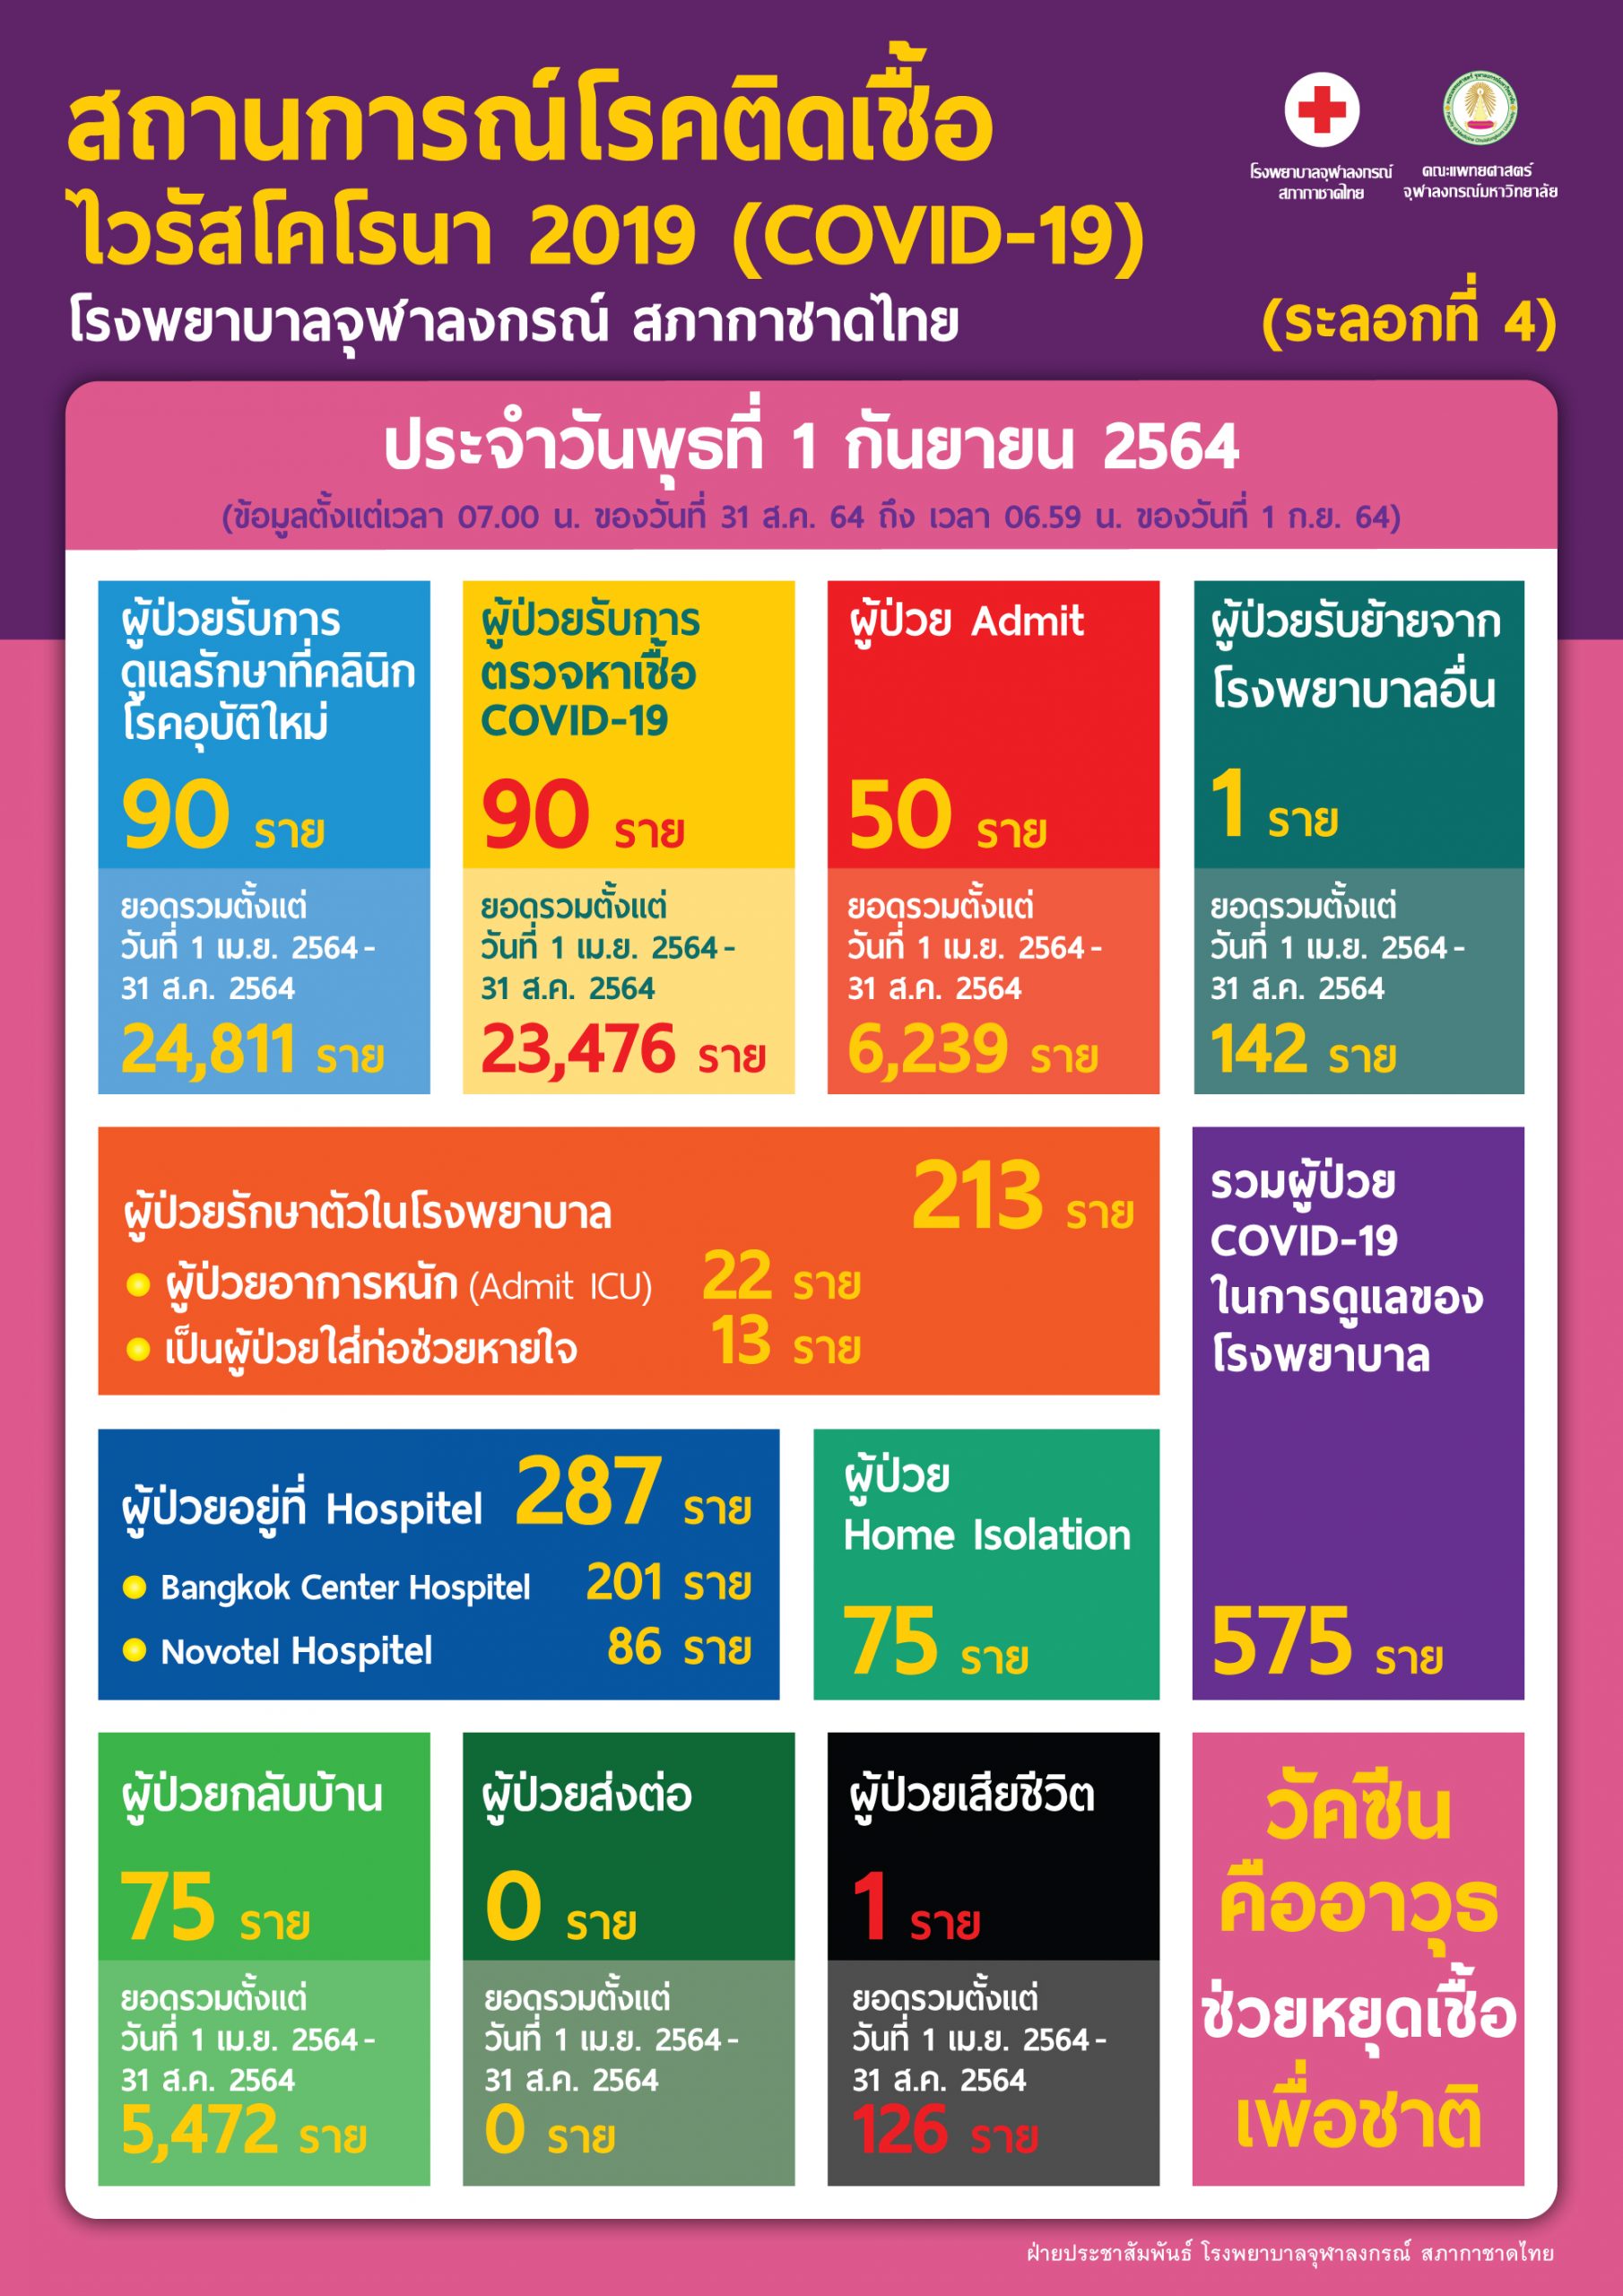 สถานการณ์โรคติดเชื้อไวรัสโคโรนา 2019 (COVID-19)  (ระลอกที่ 4) โรงพยาบาลจุฬาลงกรณ์ สภากาชาดไทย ประจำวันพุธที่ 1 กันยายน 2564